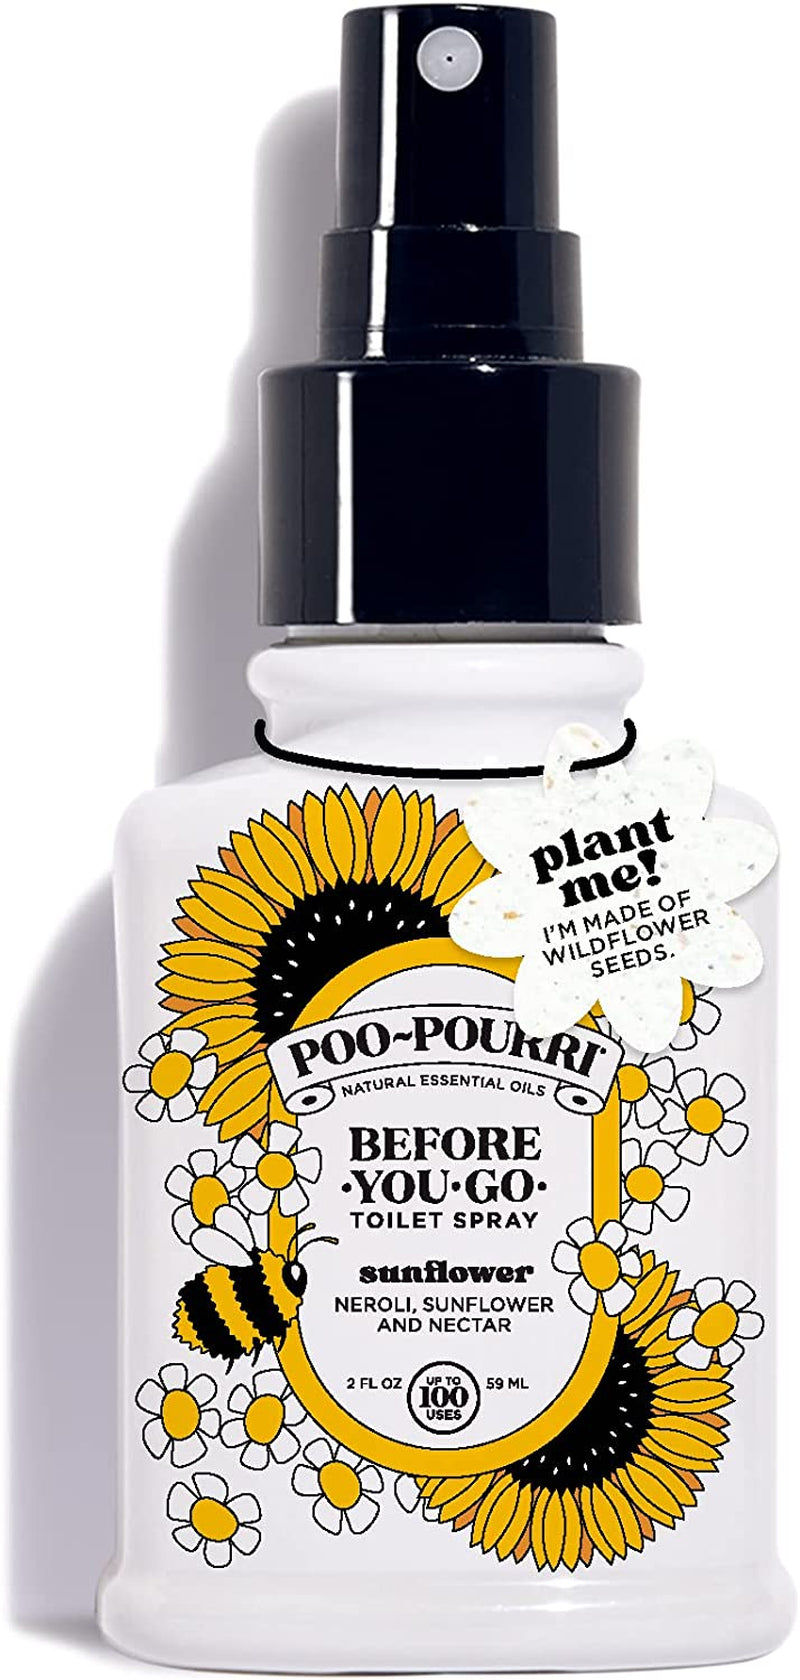 Poo-Pourri Before-You-go Toilet Spray